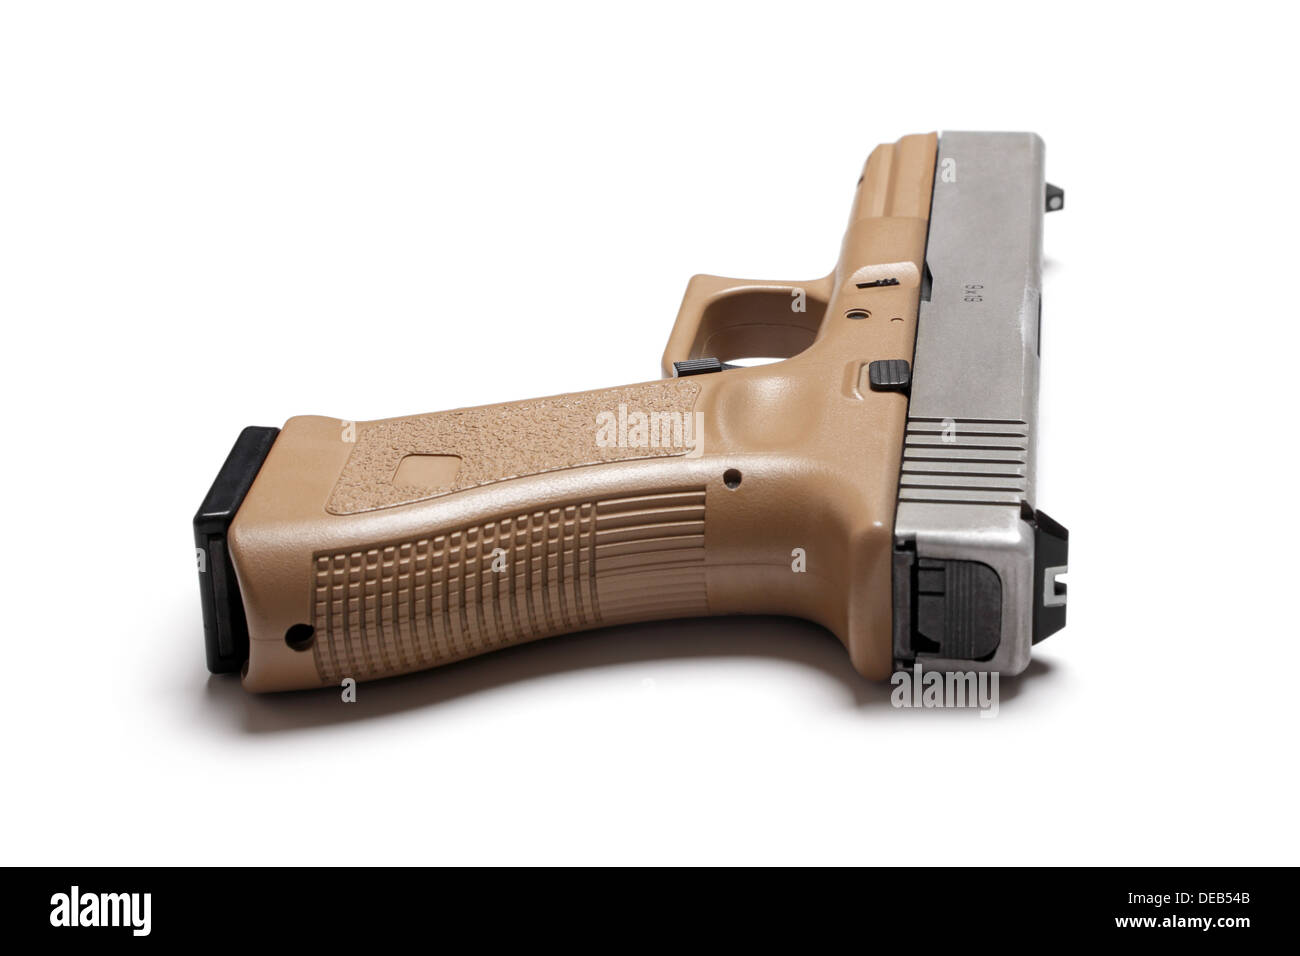 Glock 17 semi auto 9mm color habano pistola aislado sobre un fondo blanco,  Foto de estudio Fotografía de stock - Alamy